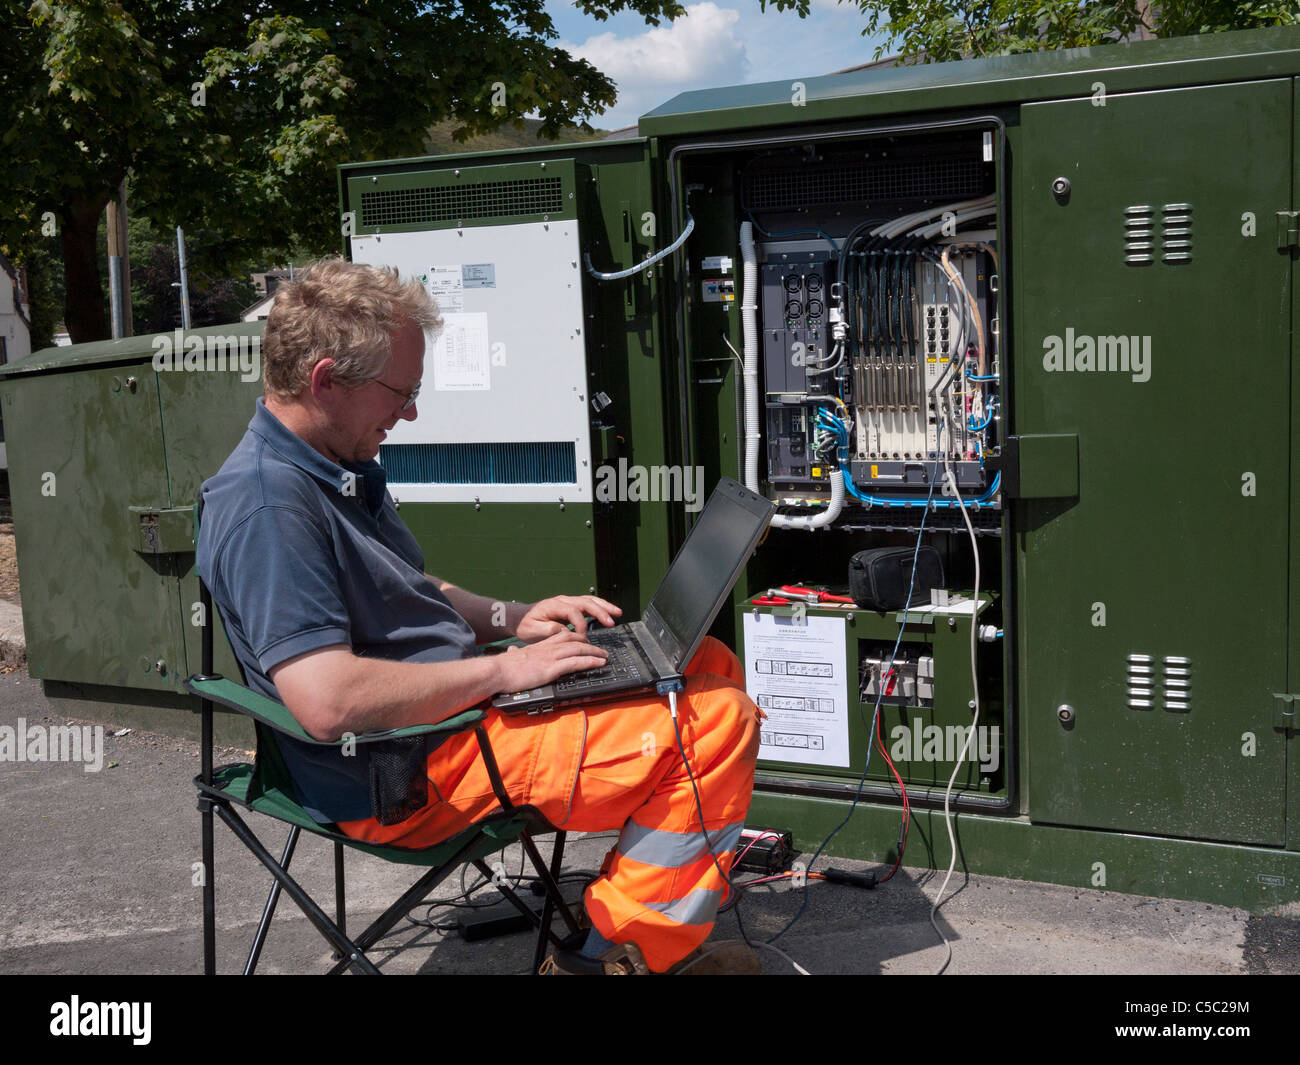 Ajout de logiciels ingénieur à la fibre optique réseau haut débit boîte de jonction. Mossley, Lancashire, Angleterre, Royaume-Uni. Banque D'Images